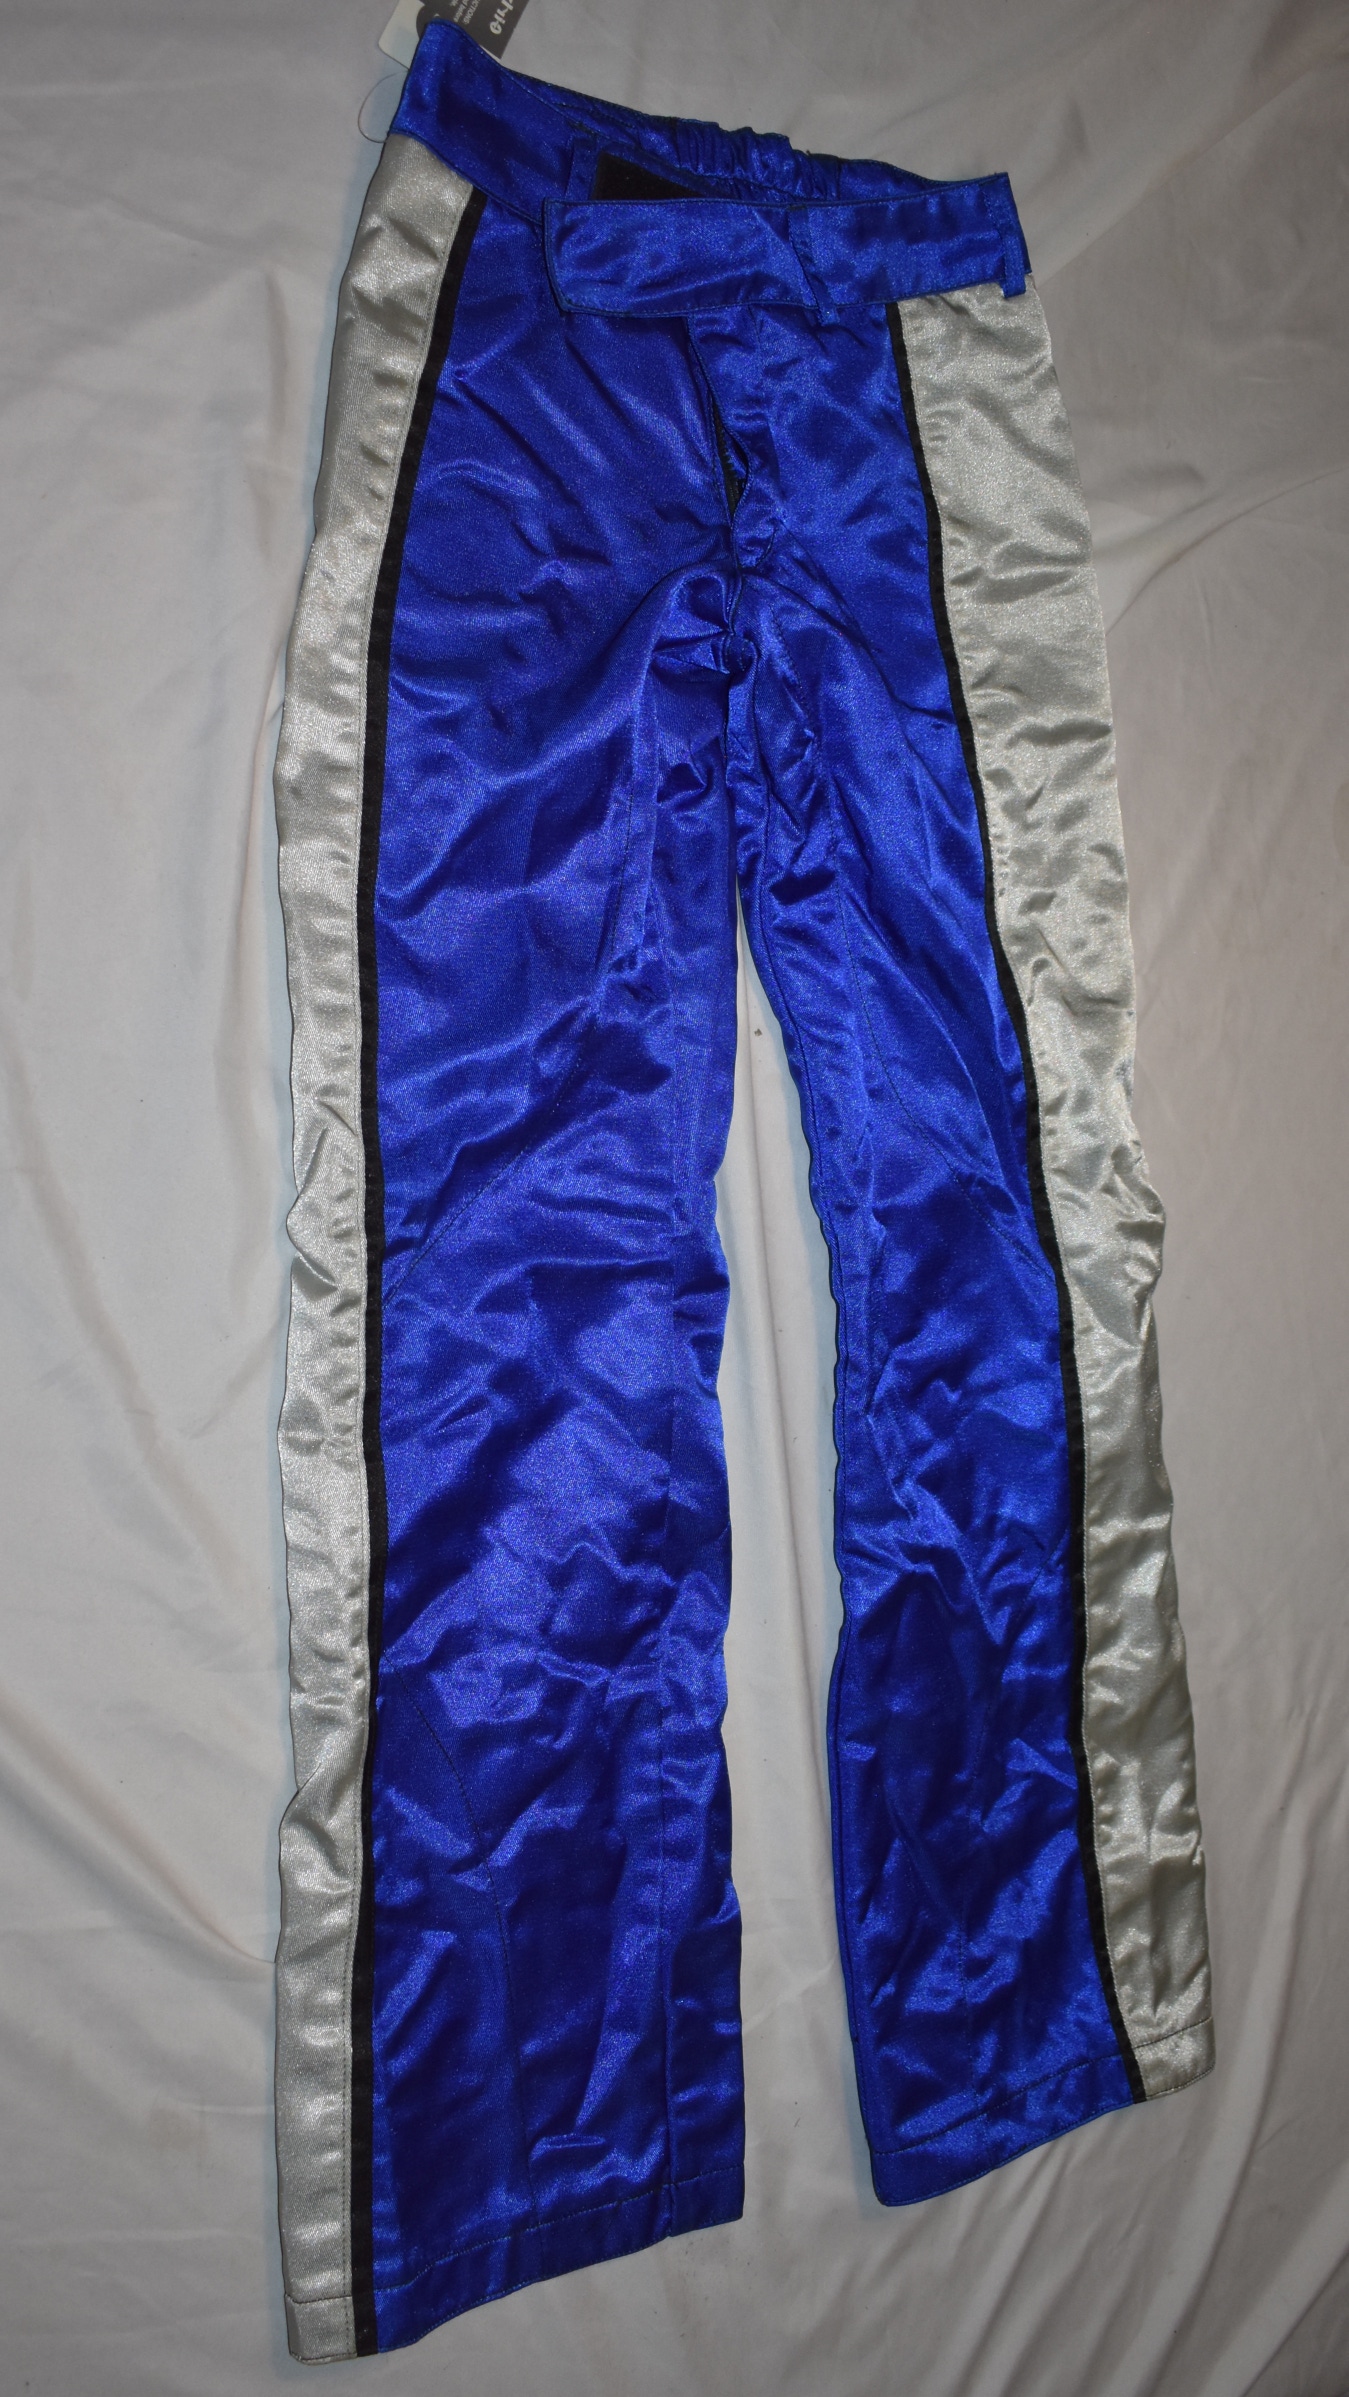 NEW - Girlyz Pants, Blue/White, Women's Size 0